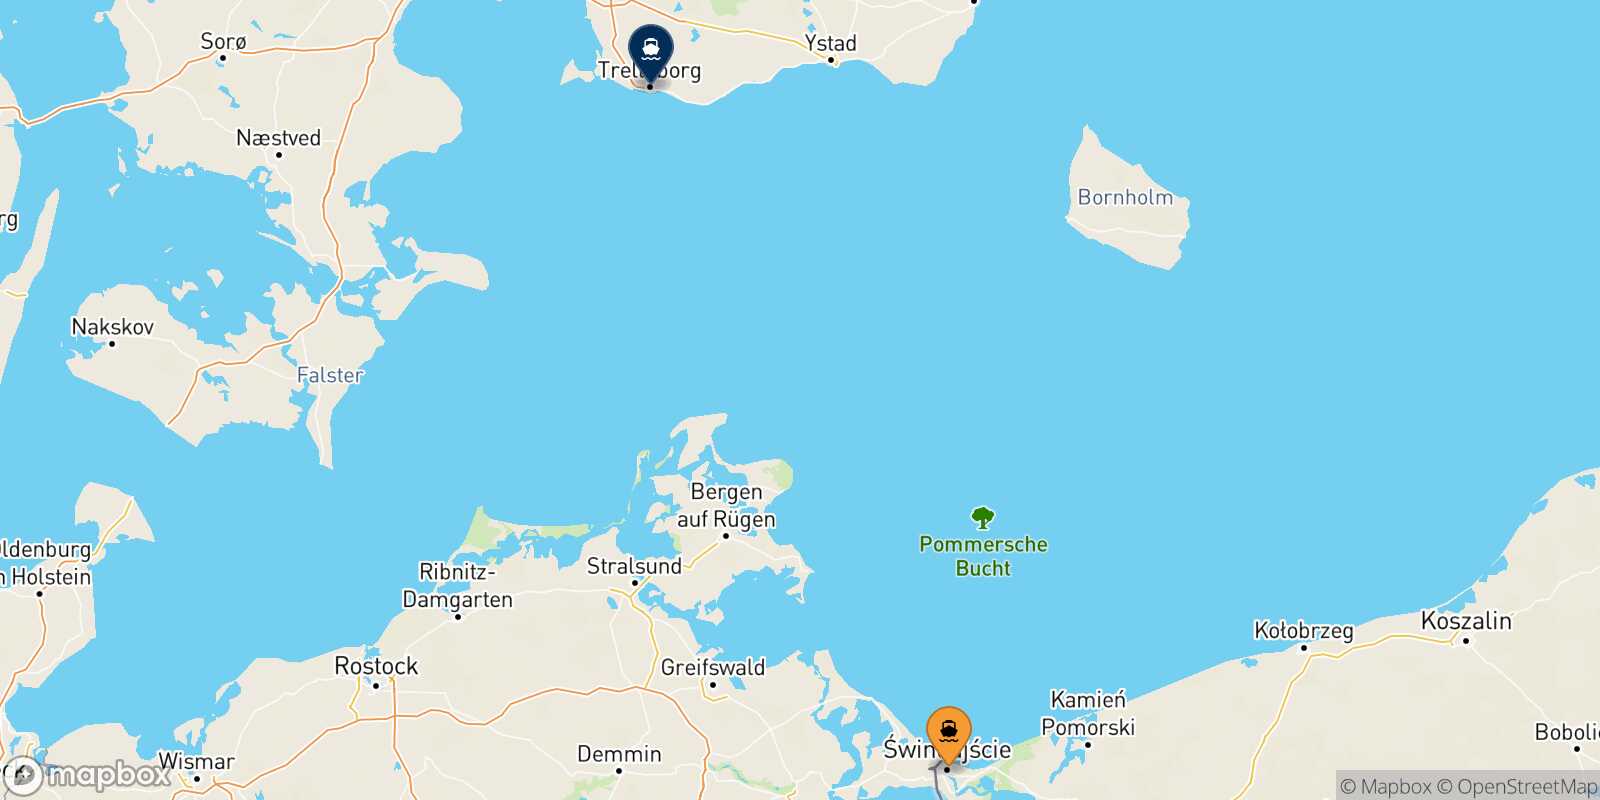 Mappa delle destinazioni raggiungibili da Swinoujscie